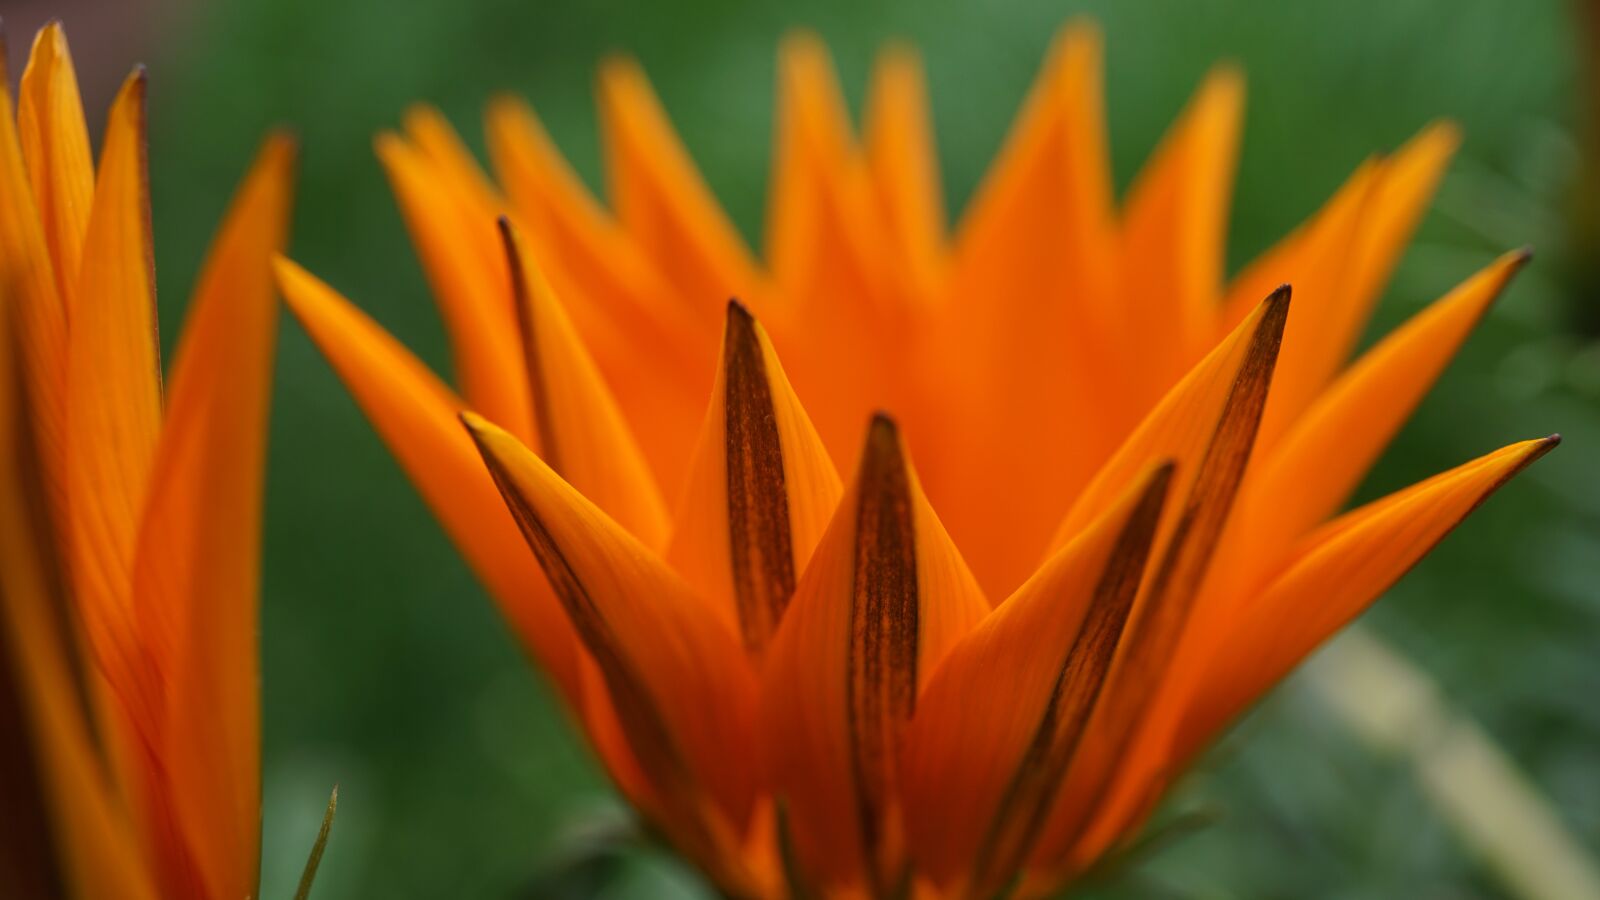 Sony a6000 + Sony E 30mm F3.5 Macro sample photo. Blossom, bloom, orange photography